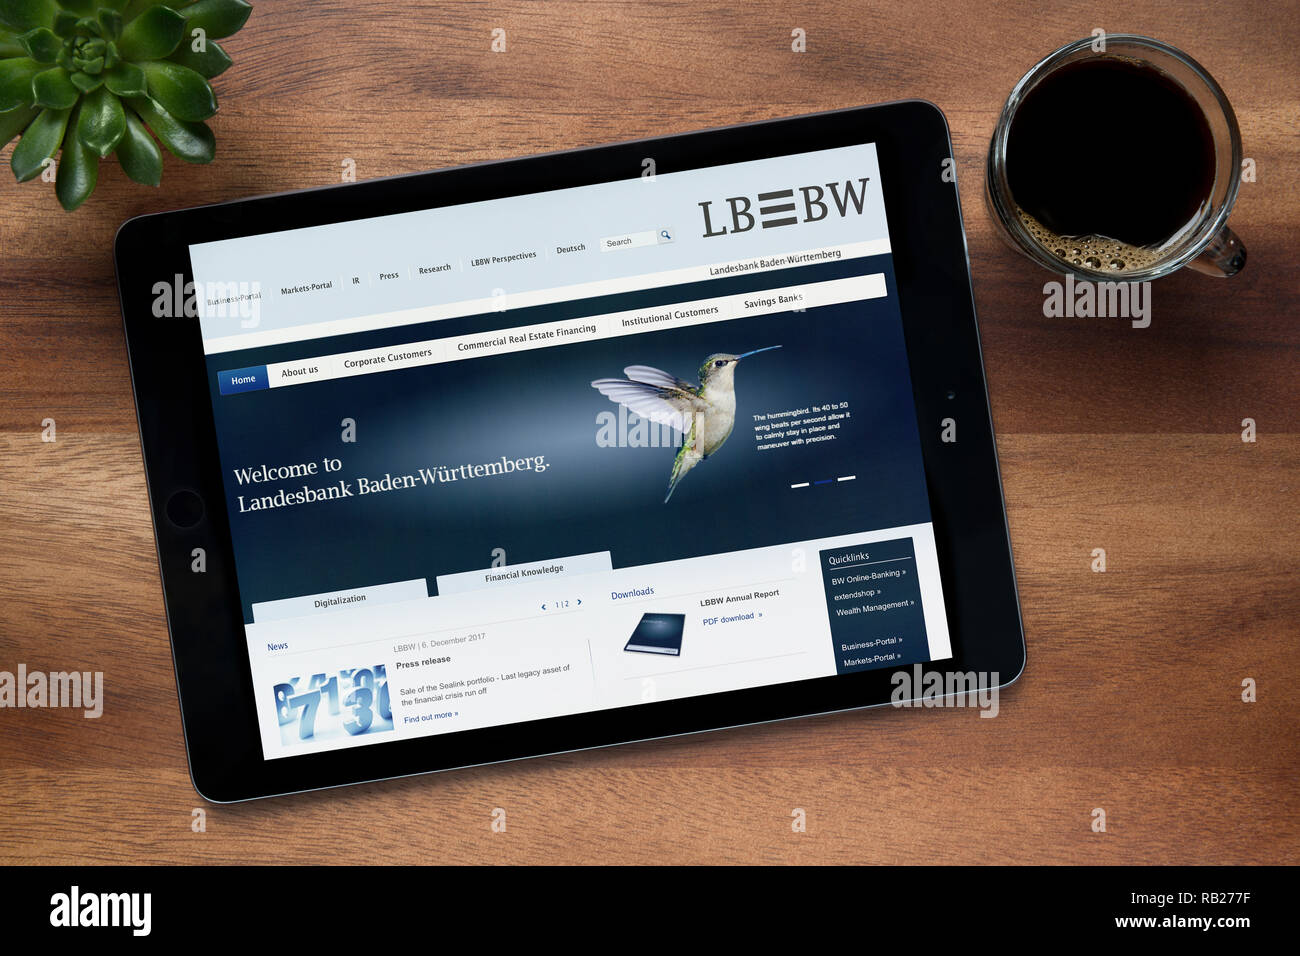 Le site internet de lb de poids corporel est vu sur un iPad tablet, sur une table en bois avec une machine à expresso et d'une plante (usage éditorial uniquement). Banque D'Images